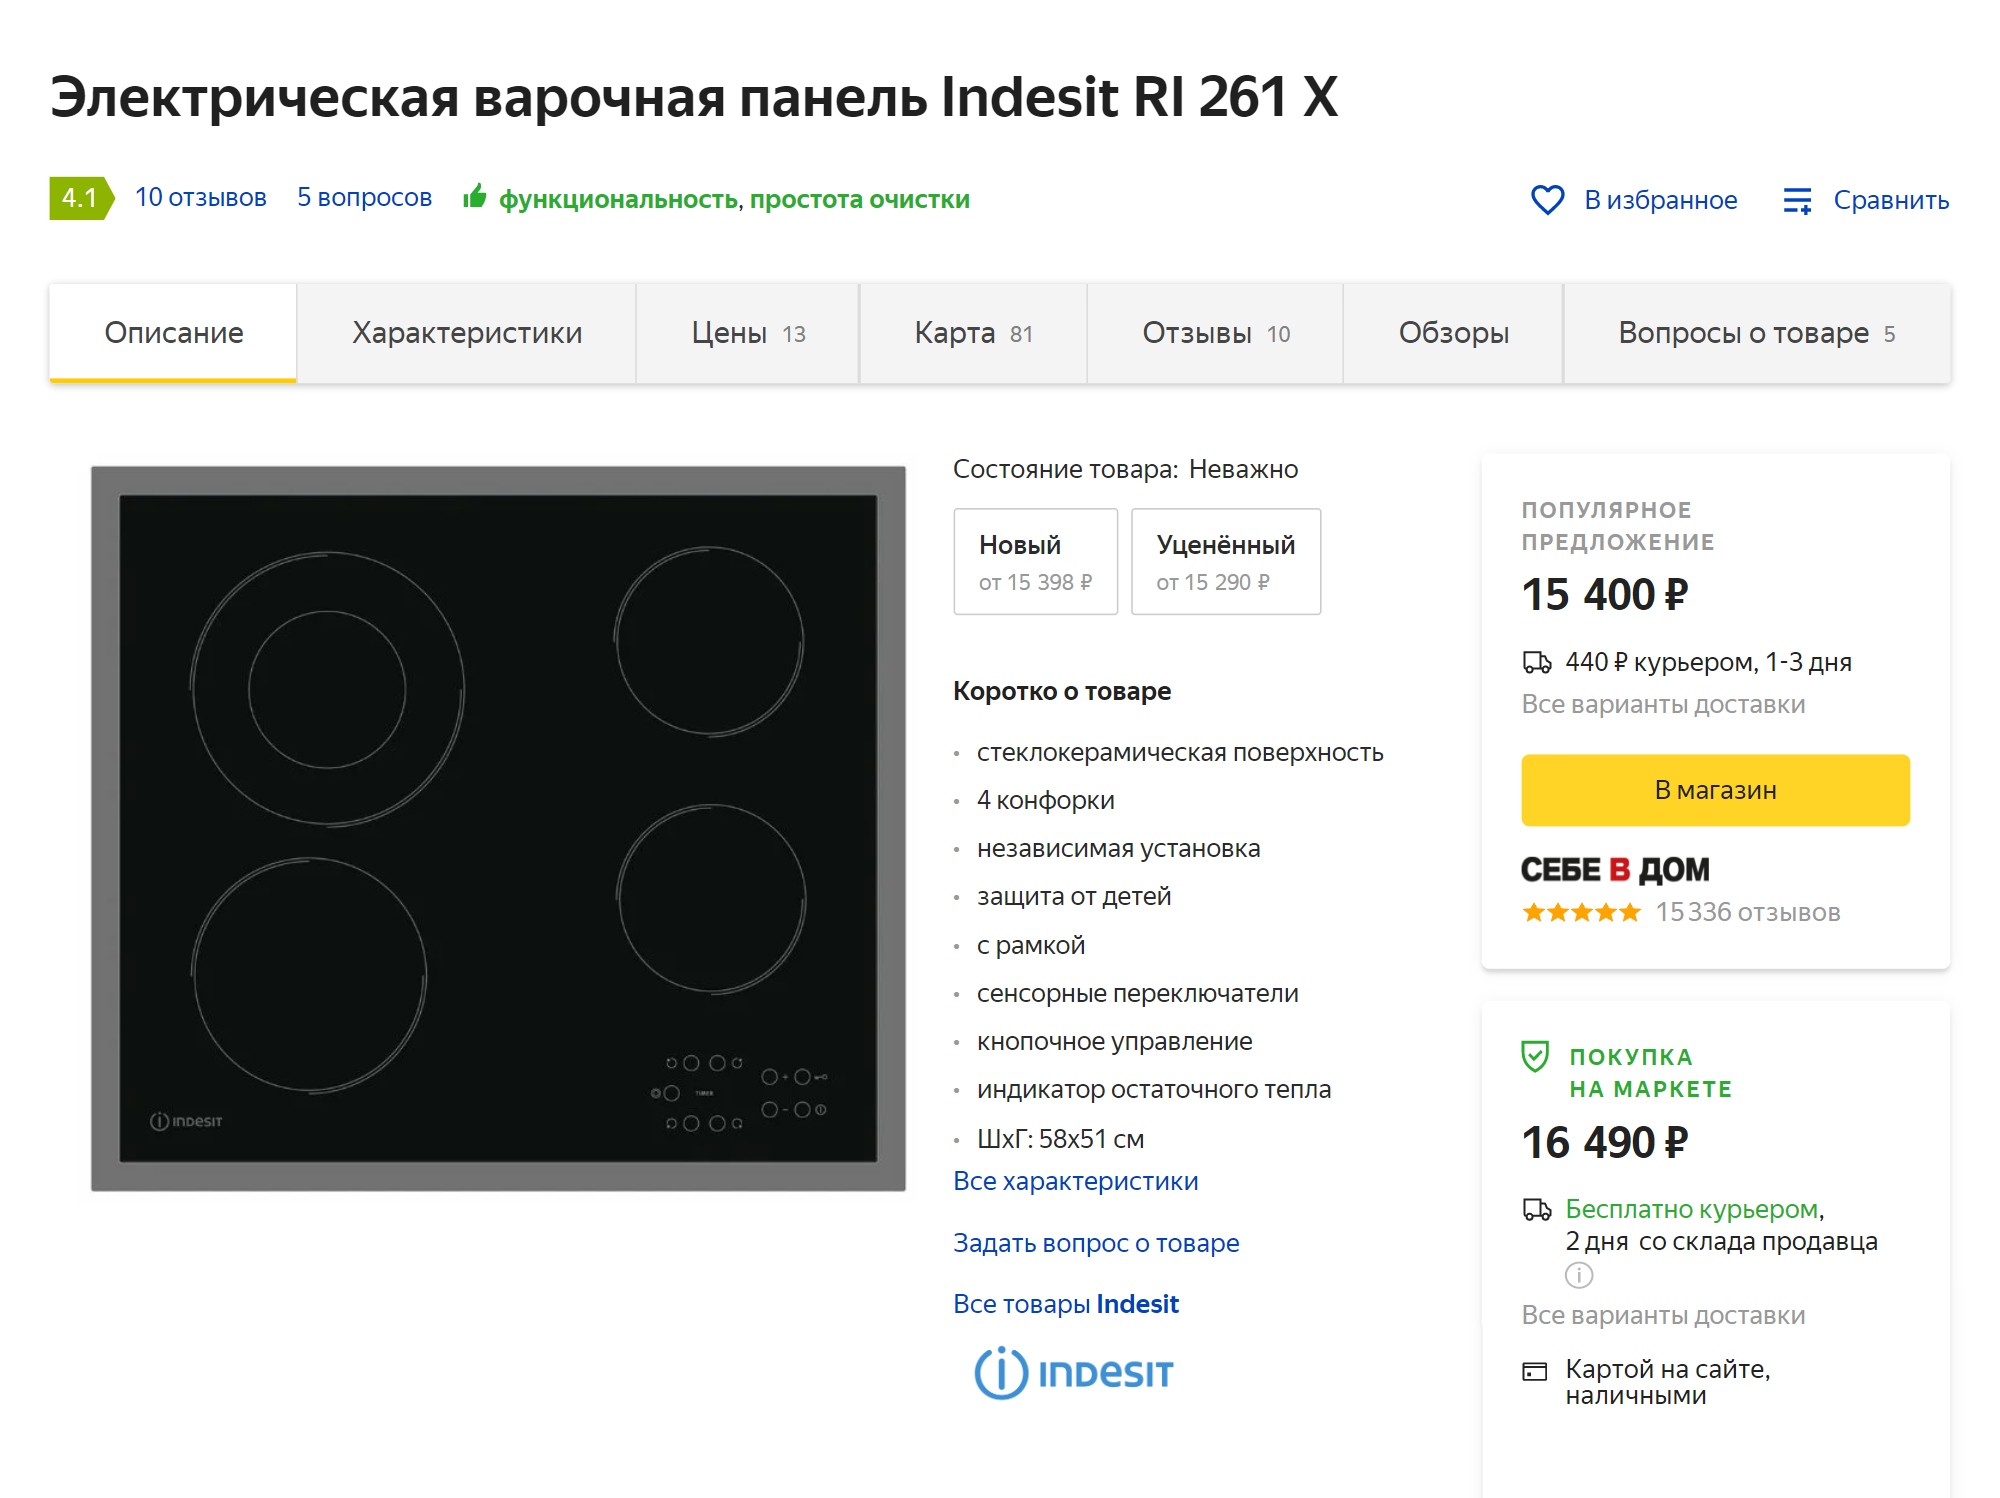 Судя по «Яндекс-маркету», варочная панель, которую нам предложили в «Едим дома», стоит около 16 490 ₽. В «Едим дома» предложили заплатить за нее 18 925 ₽, а без скидки — 20 292 ₽